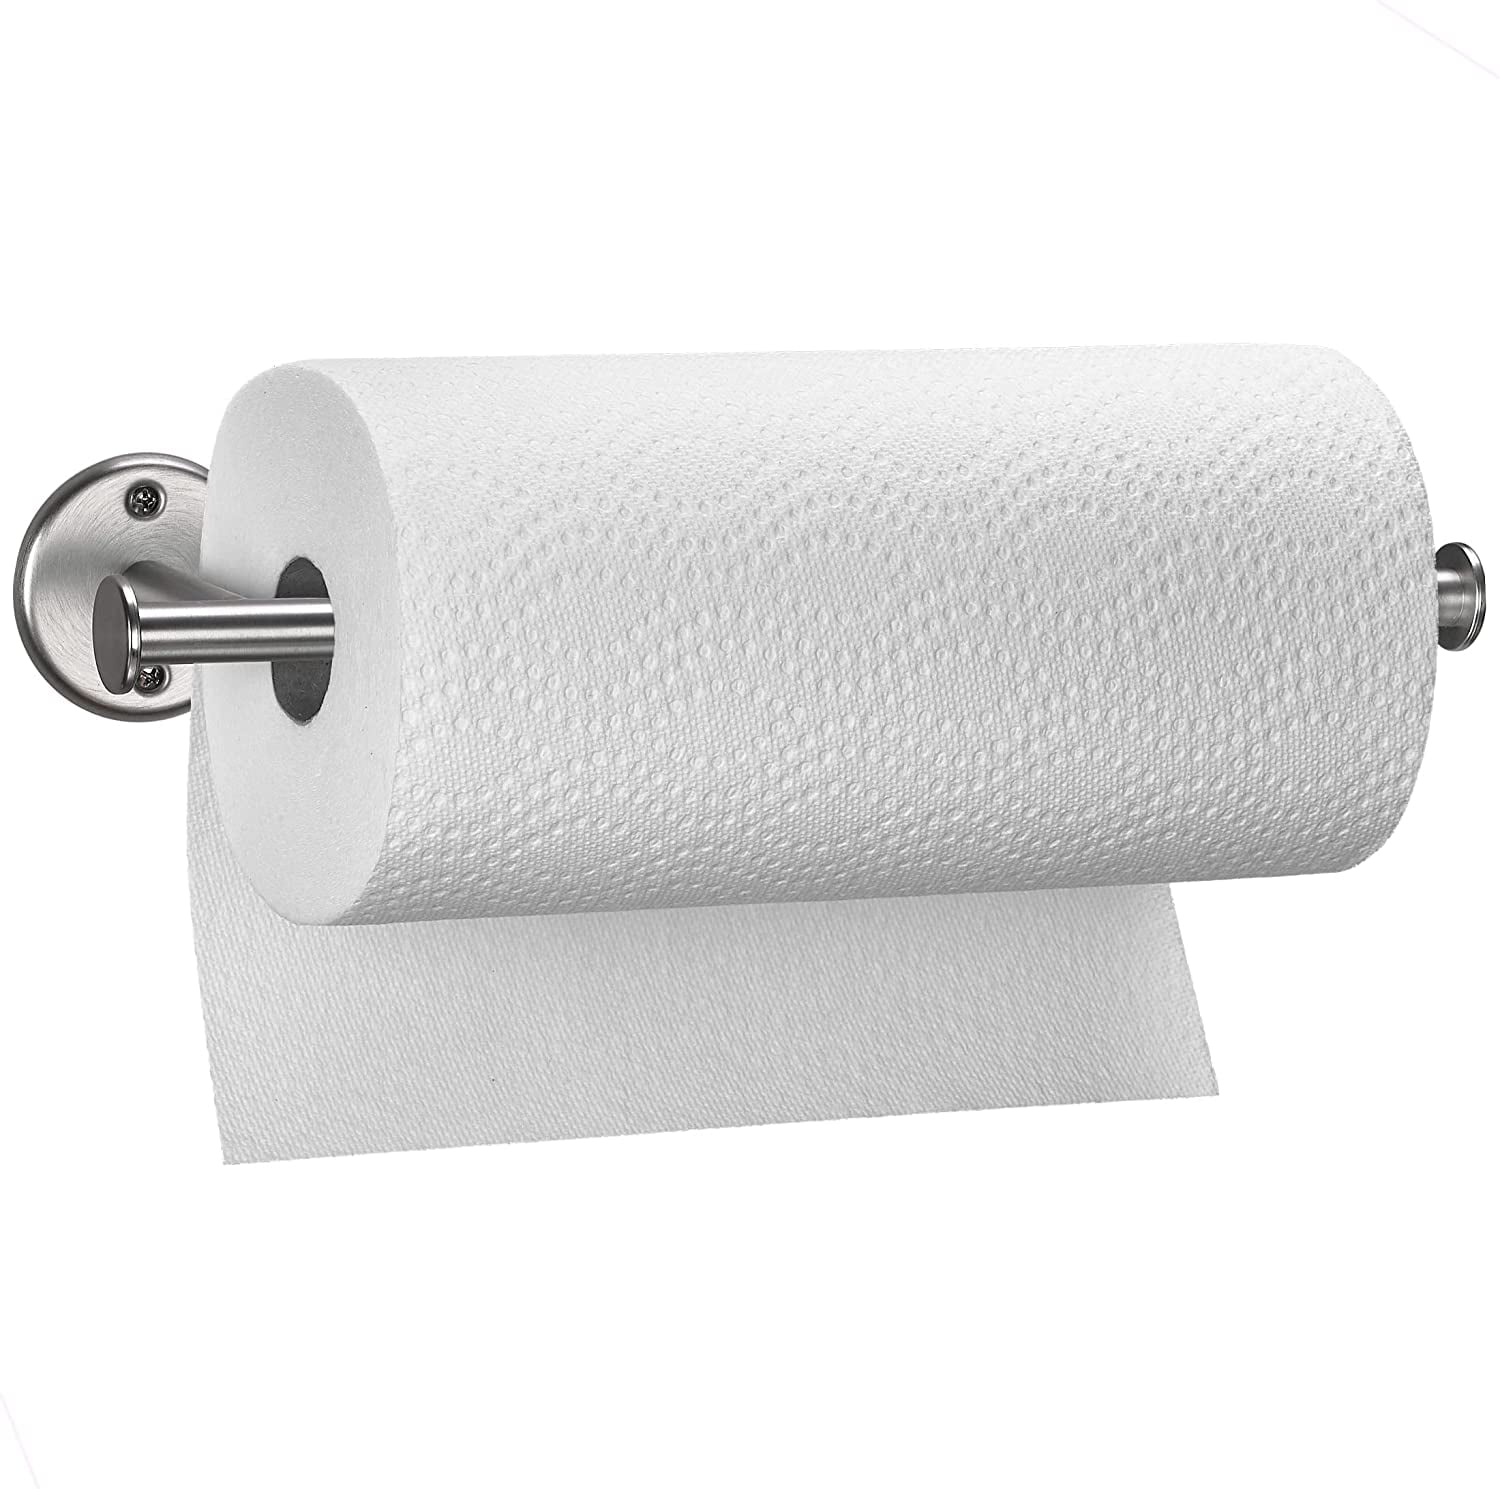 Modern Under Cabinet or Wall Mount Dispenser or Umbra Cappa Paper Towel Holder 